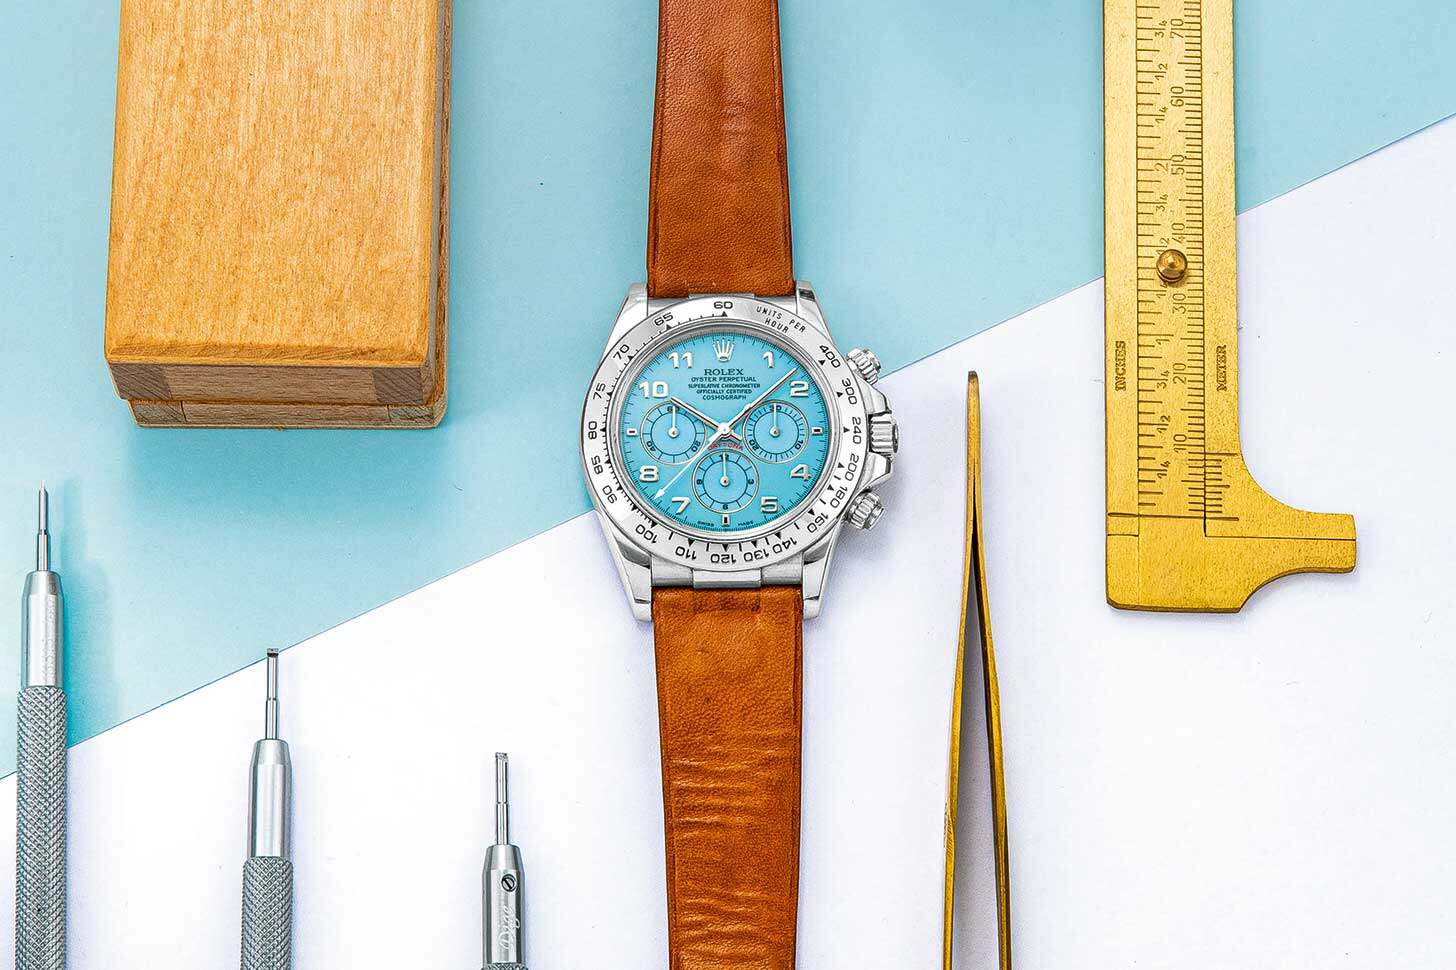 投資 名錶 拍賣 勞力士 Rolex Daytona 蘇富比 sotheby's 春拍